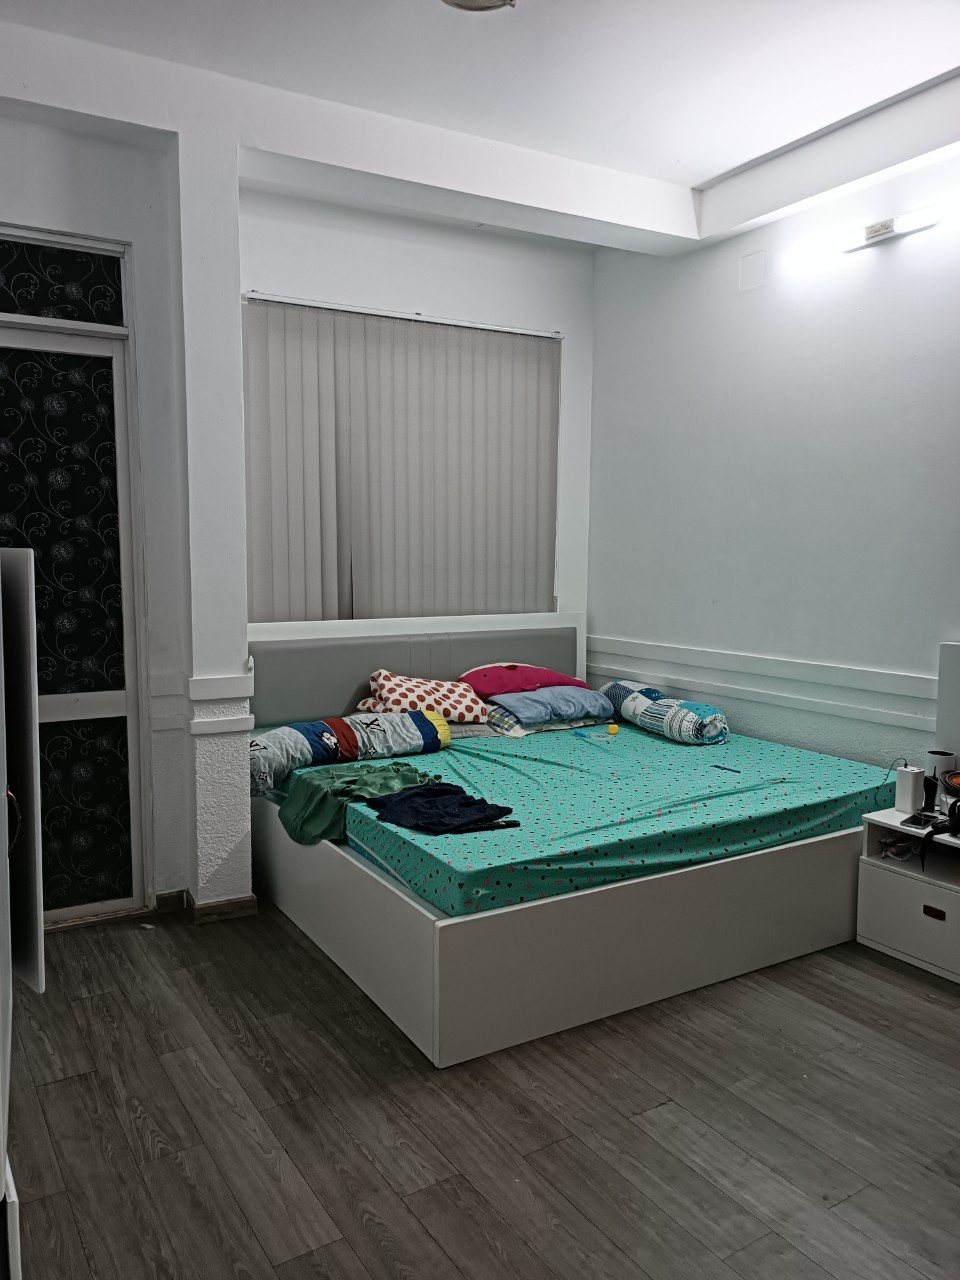 Cho thuê nhà nguyên căn tại quận 7 gần chợ Tân Quym, có 4 phòng ngủ cho thuê kèm theo nội thất